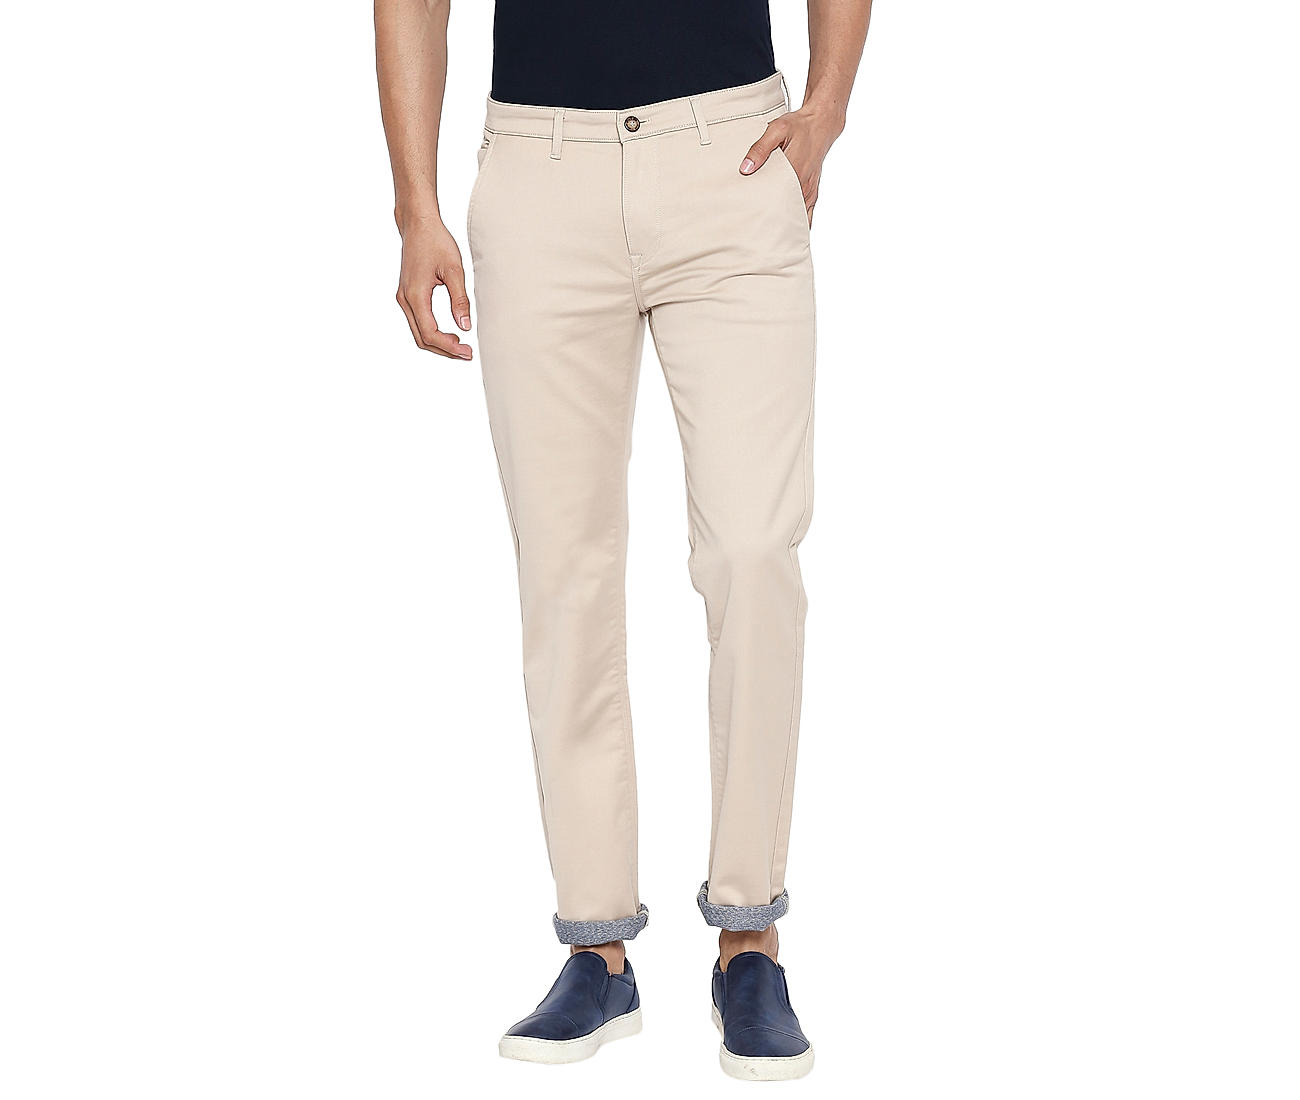 Formal Trouser Buy Men Navy Blue Cotton Formal Trouser Online  Clithscom